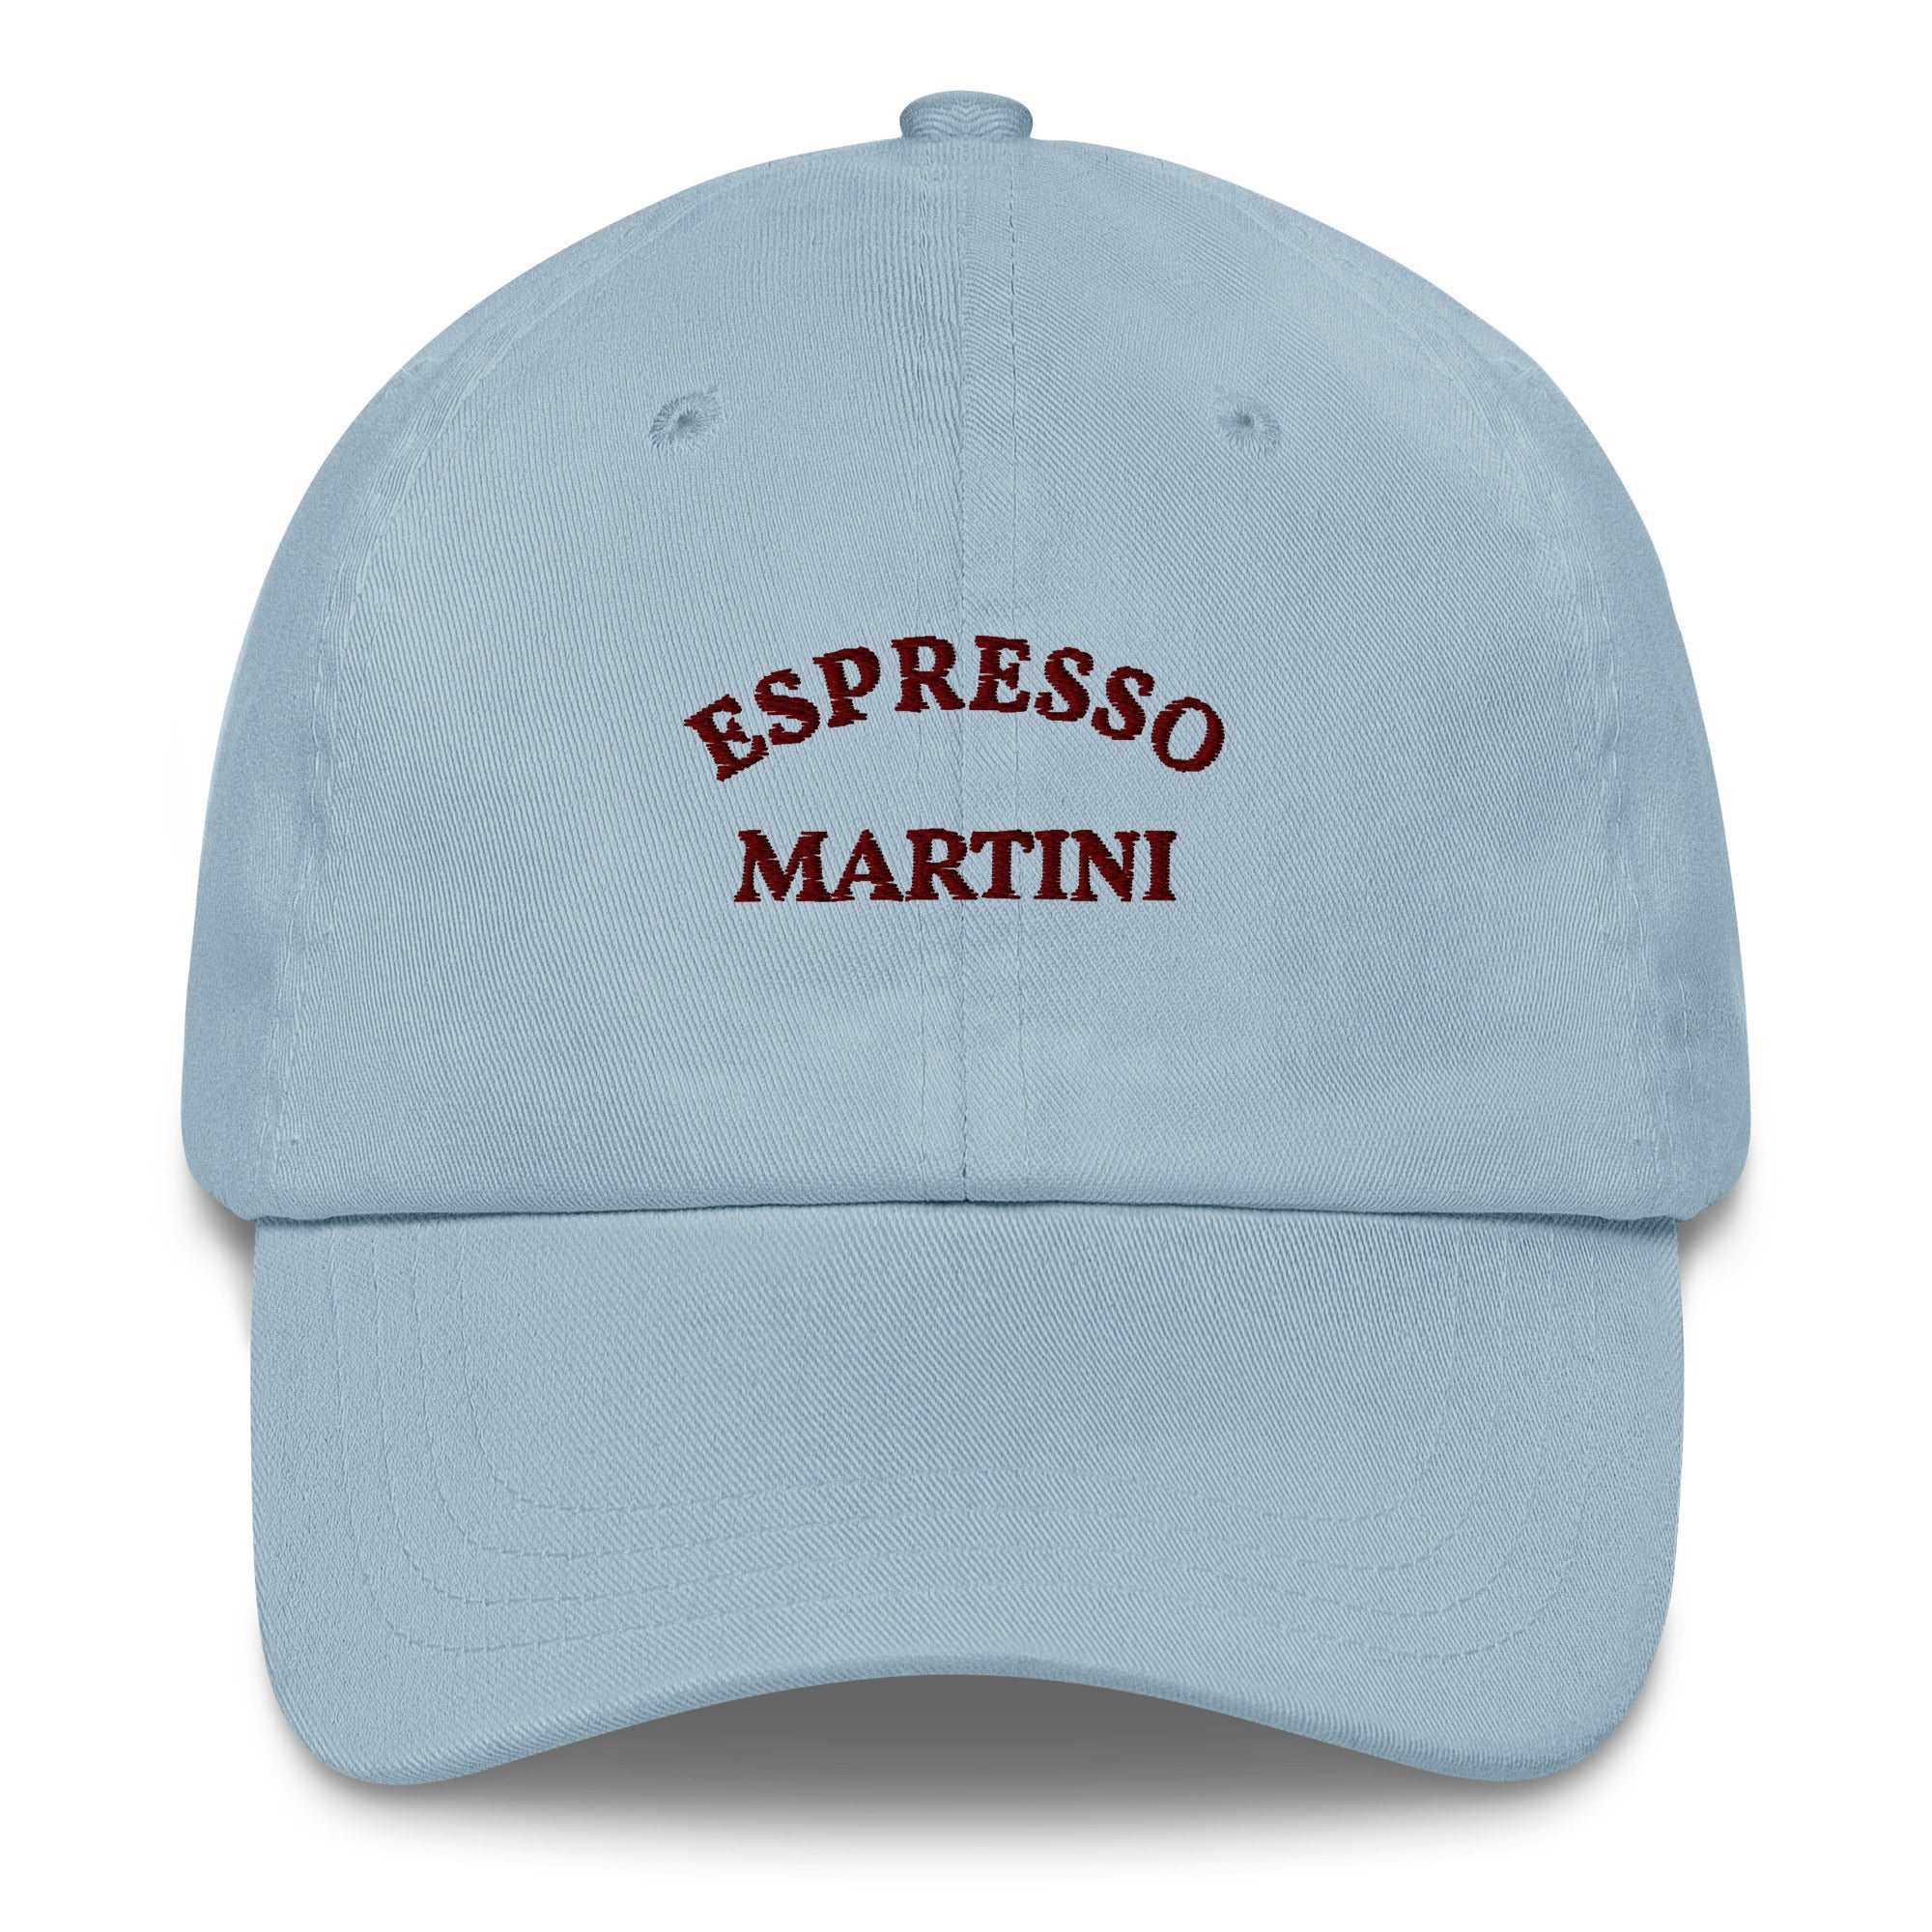 Espresso Martini - Cap